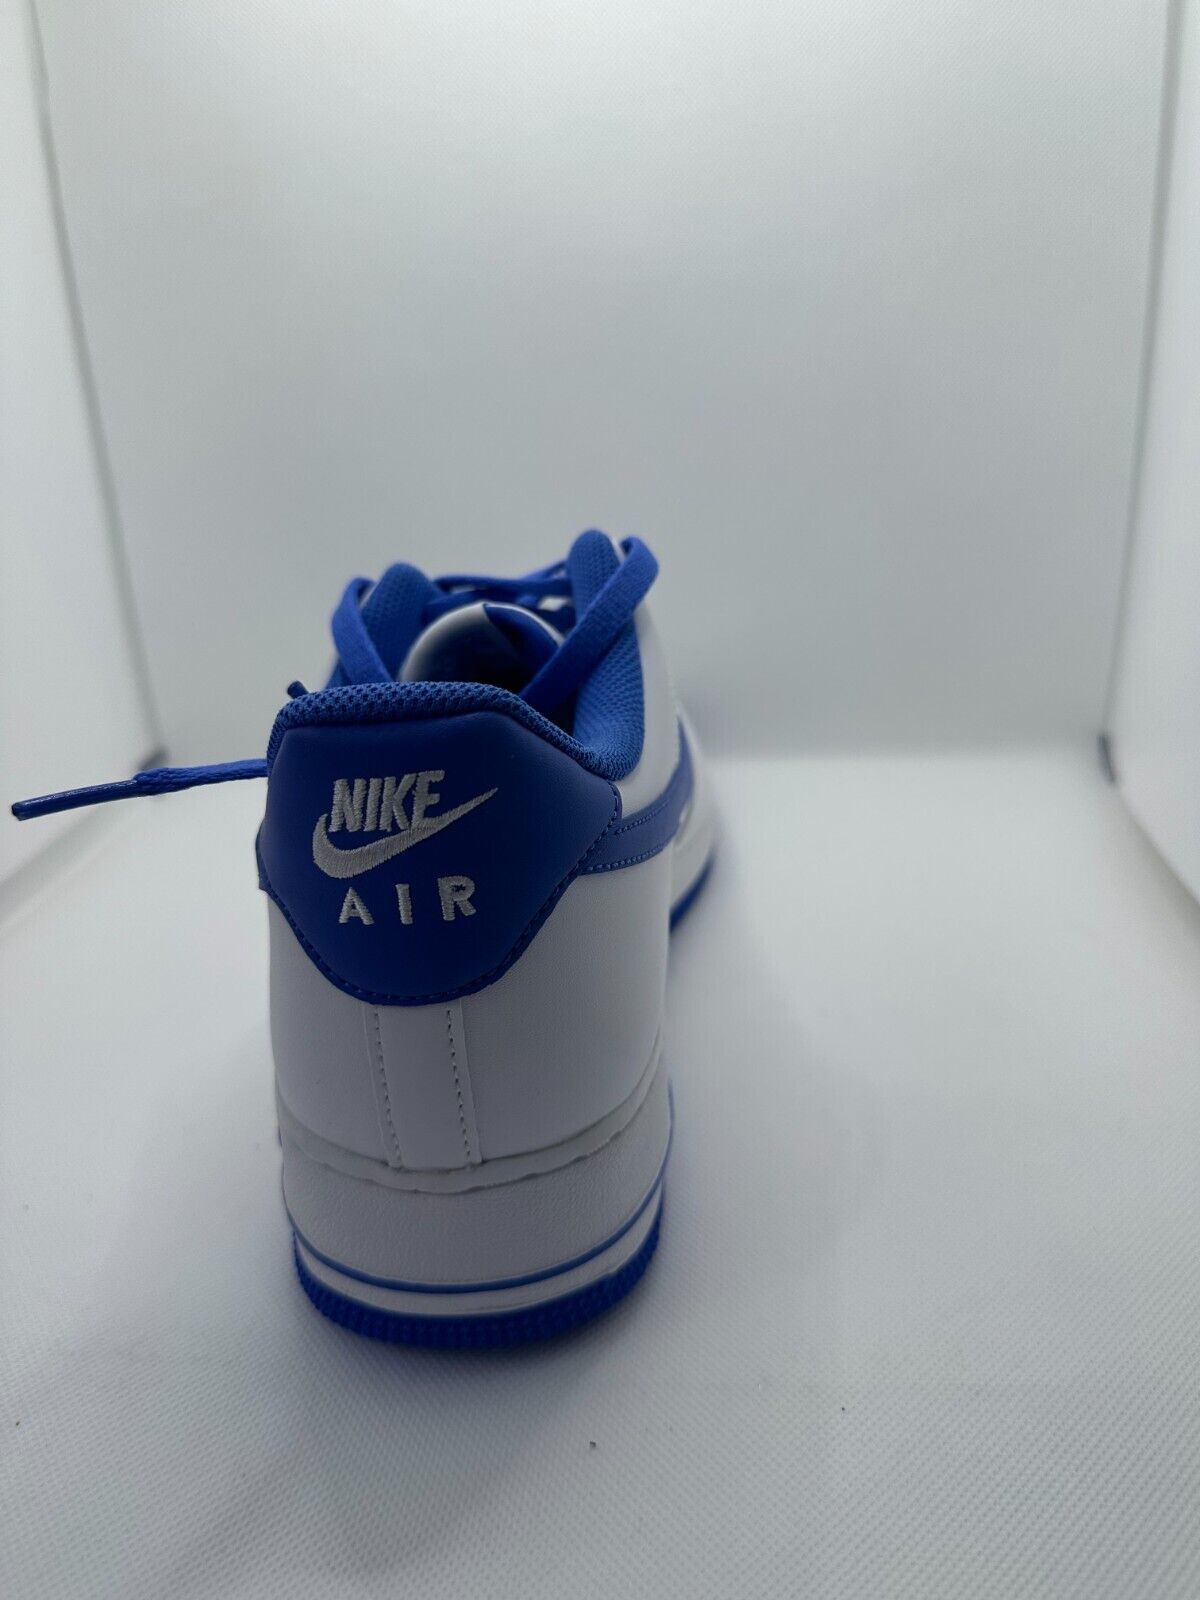 Men's Nike Air Force 1 '07 White/Medium Blue (DH7561 104) - 12 